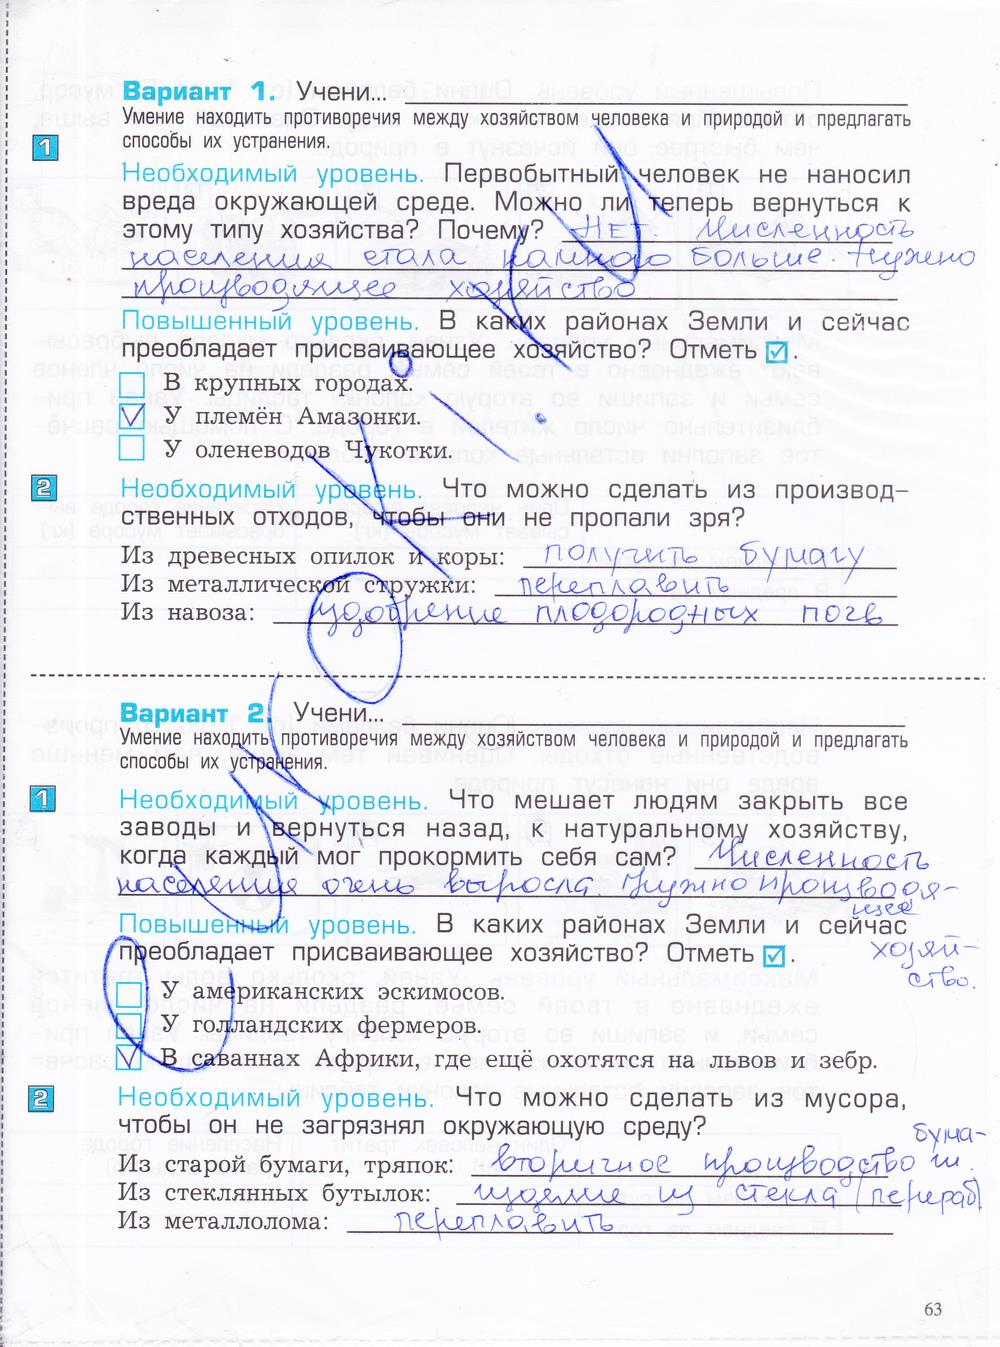 гдз 4 класс проверочные и контрольные работы часть 1 страница 63 окружающий мир Вахрушев, Бурский, Родыгина